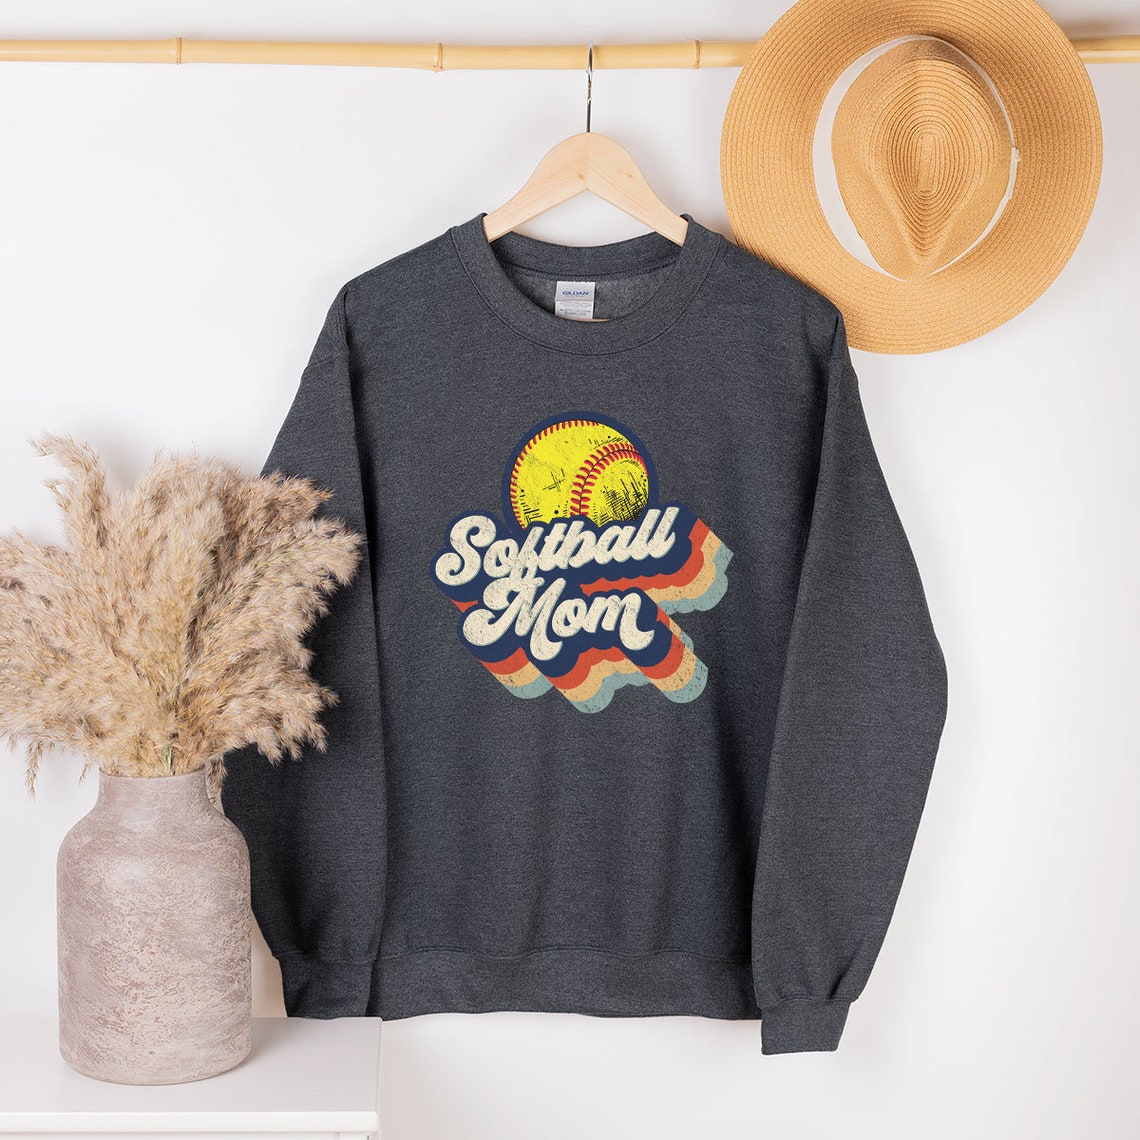 Retro Softball Mom Shirt